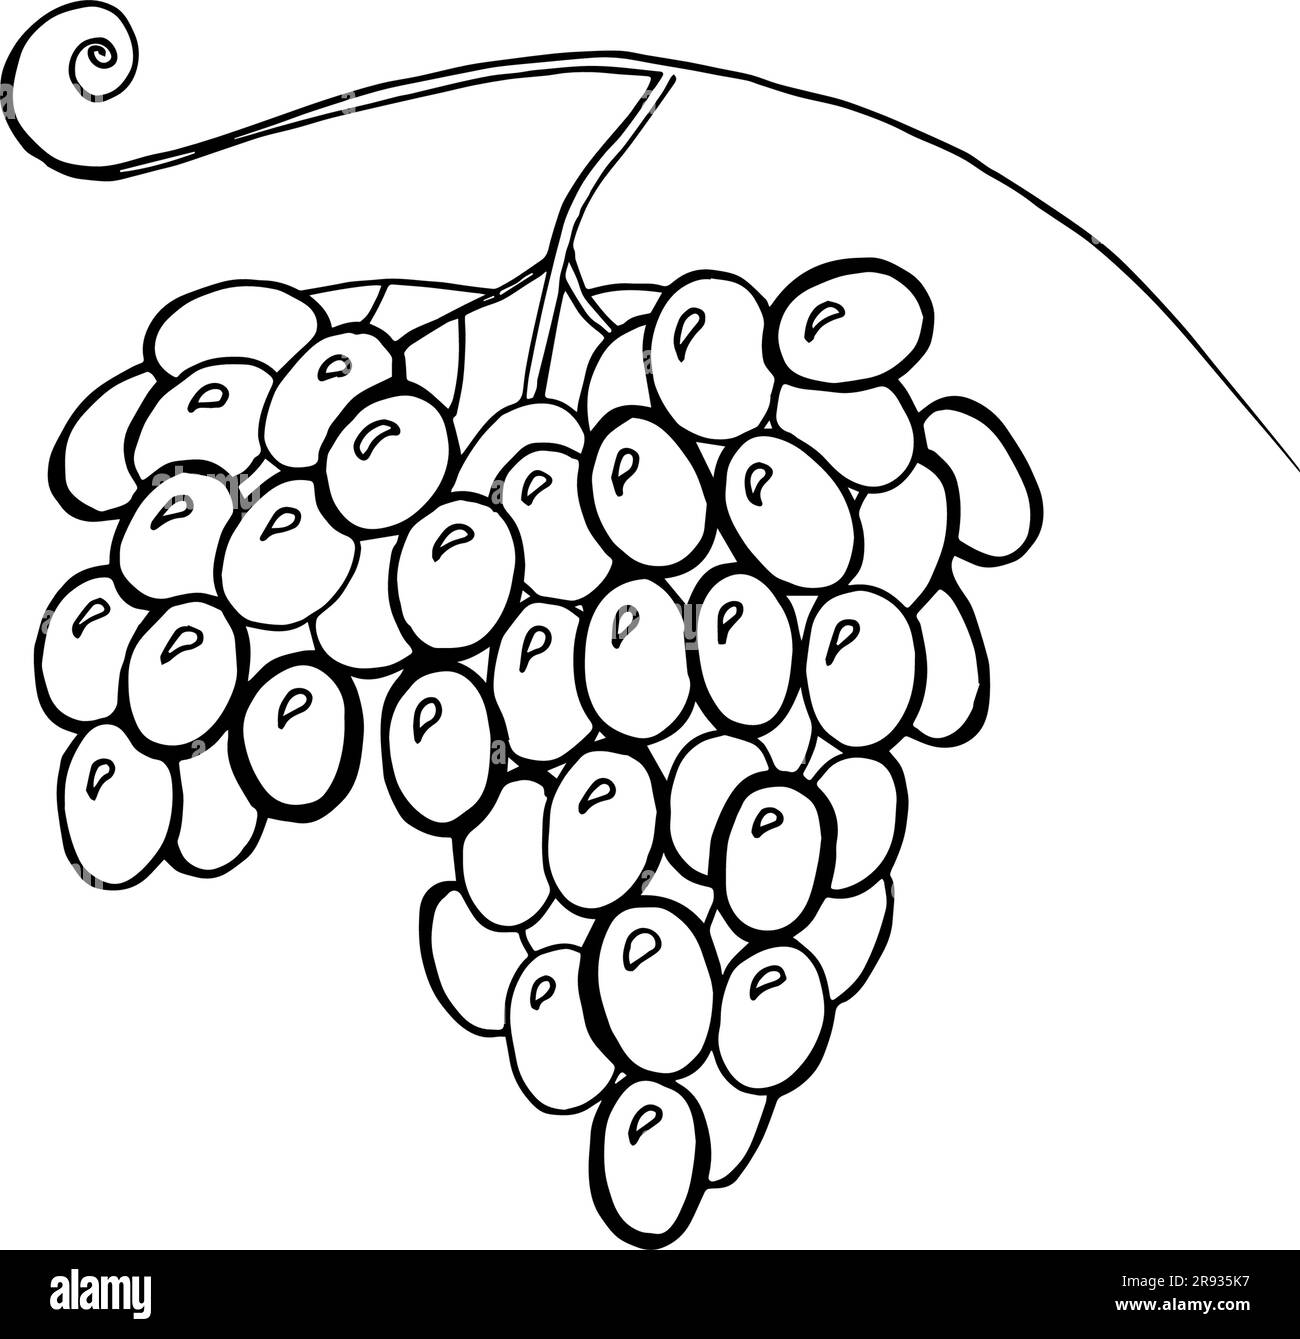 Illustration vectorielle de raisins aquarelle, dessinés à la main. Concept pour le marché agricole, les aliments biologiques, la conception de produits naturels, l'emballage de vin, la tisane, râpe Illustration de Vecteur